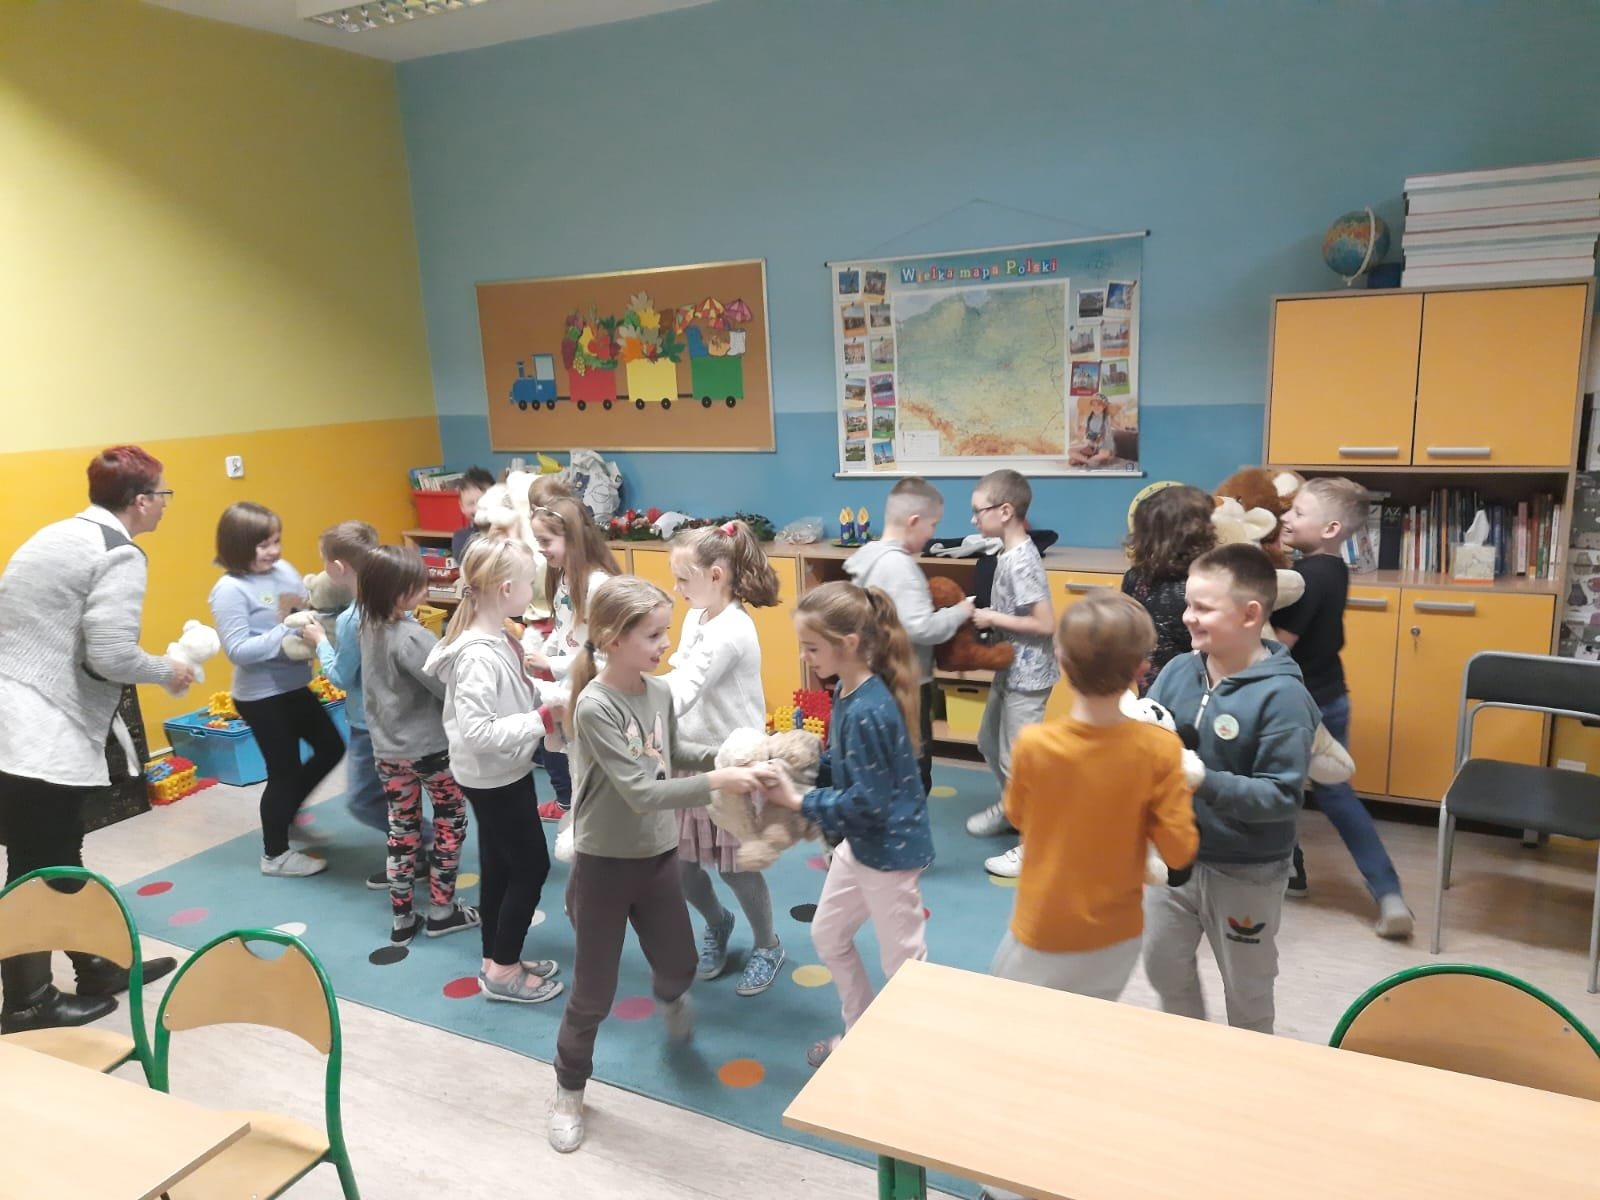 Zabawa muzyczno- ruchowa do piosenki „Mam pluszowego misia”. Uczniowie klasy 2 b śpiewają i tańczą z maskotkami